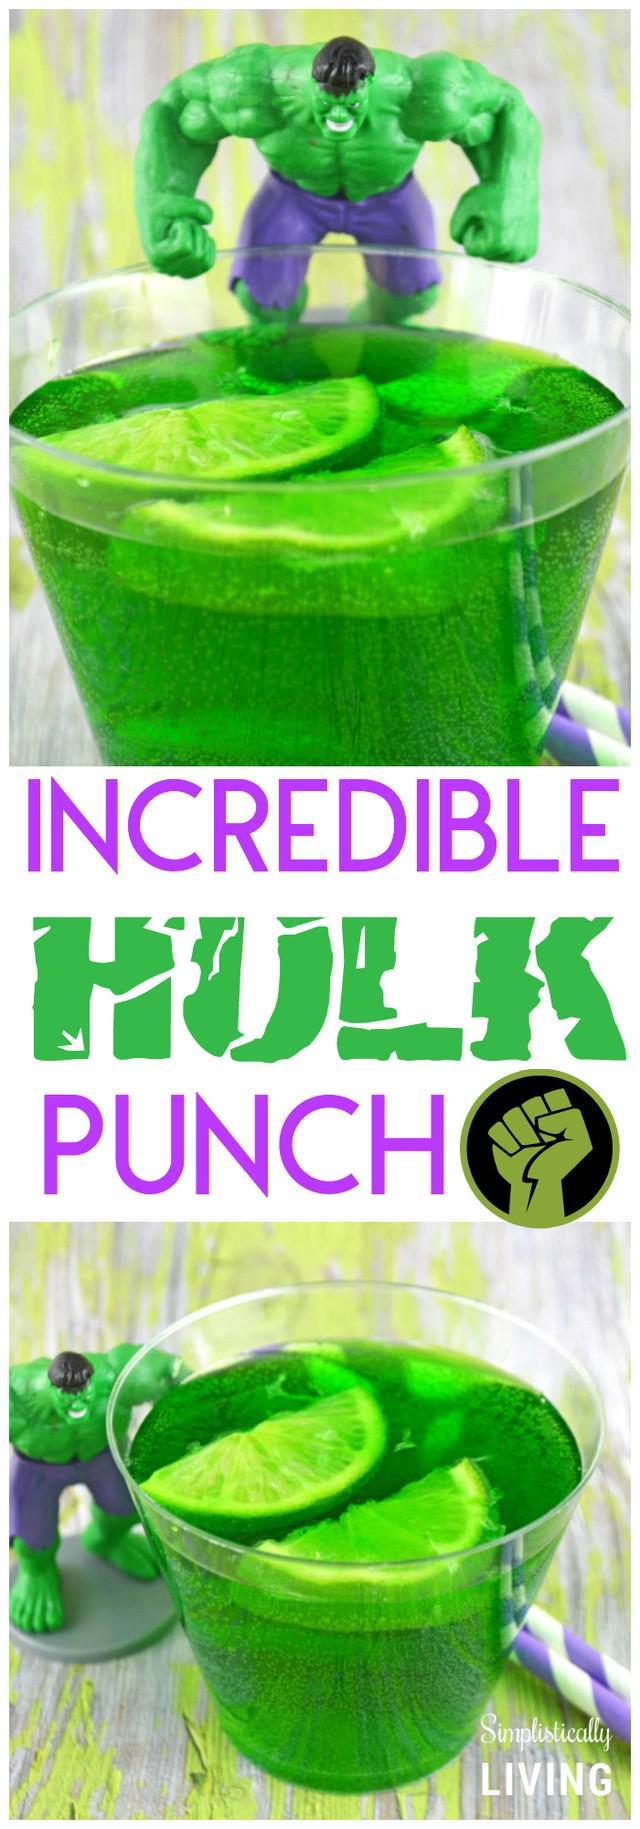 รูปภาพ:https://www.simplisticallyliving.com/wp-content/uploads/2015/05/Incredible-Hulk-Punch.jpg